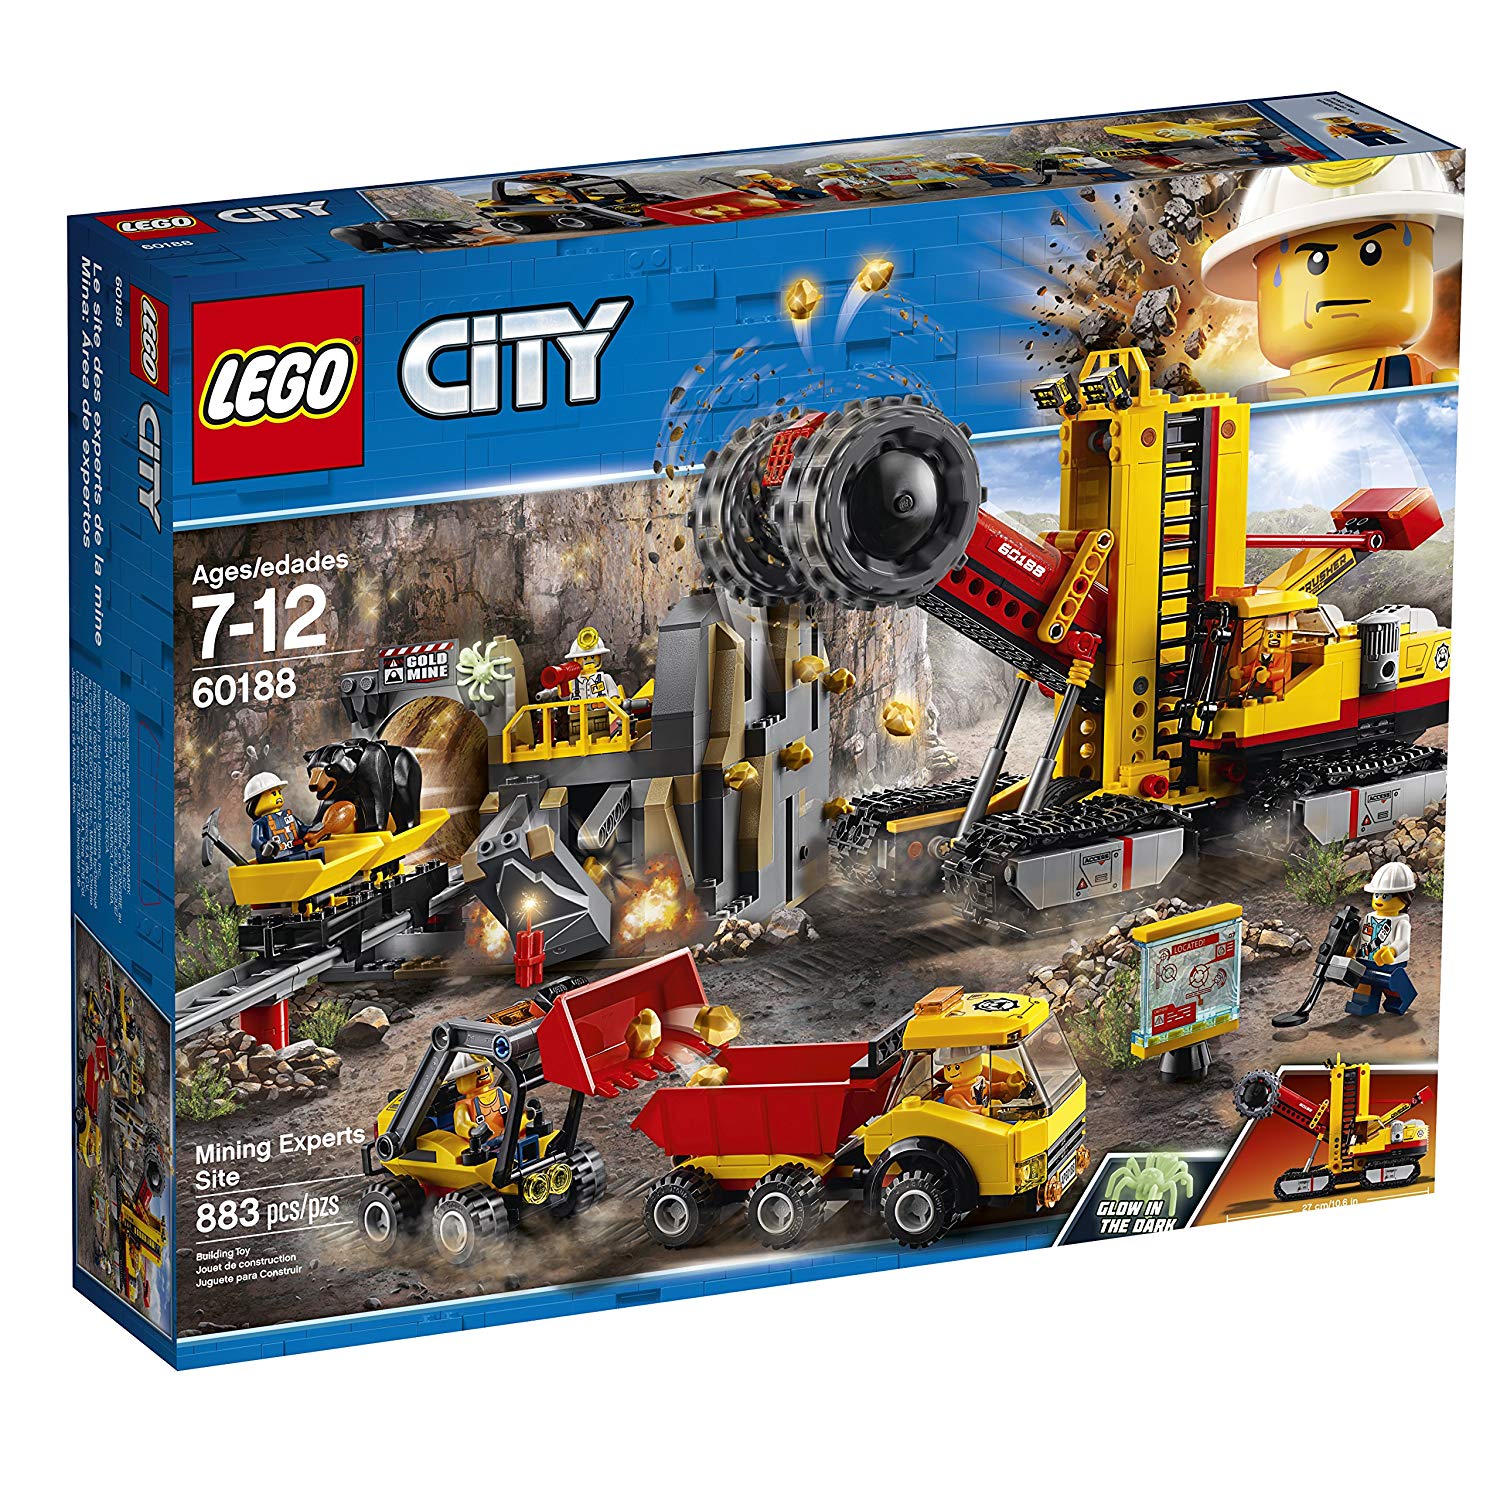 LEGO City Mining Amazon Sales - May 2019 - The Brick Fan